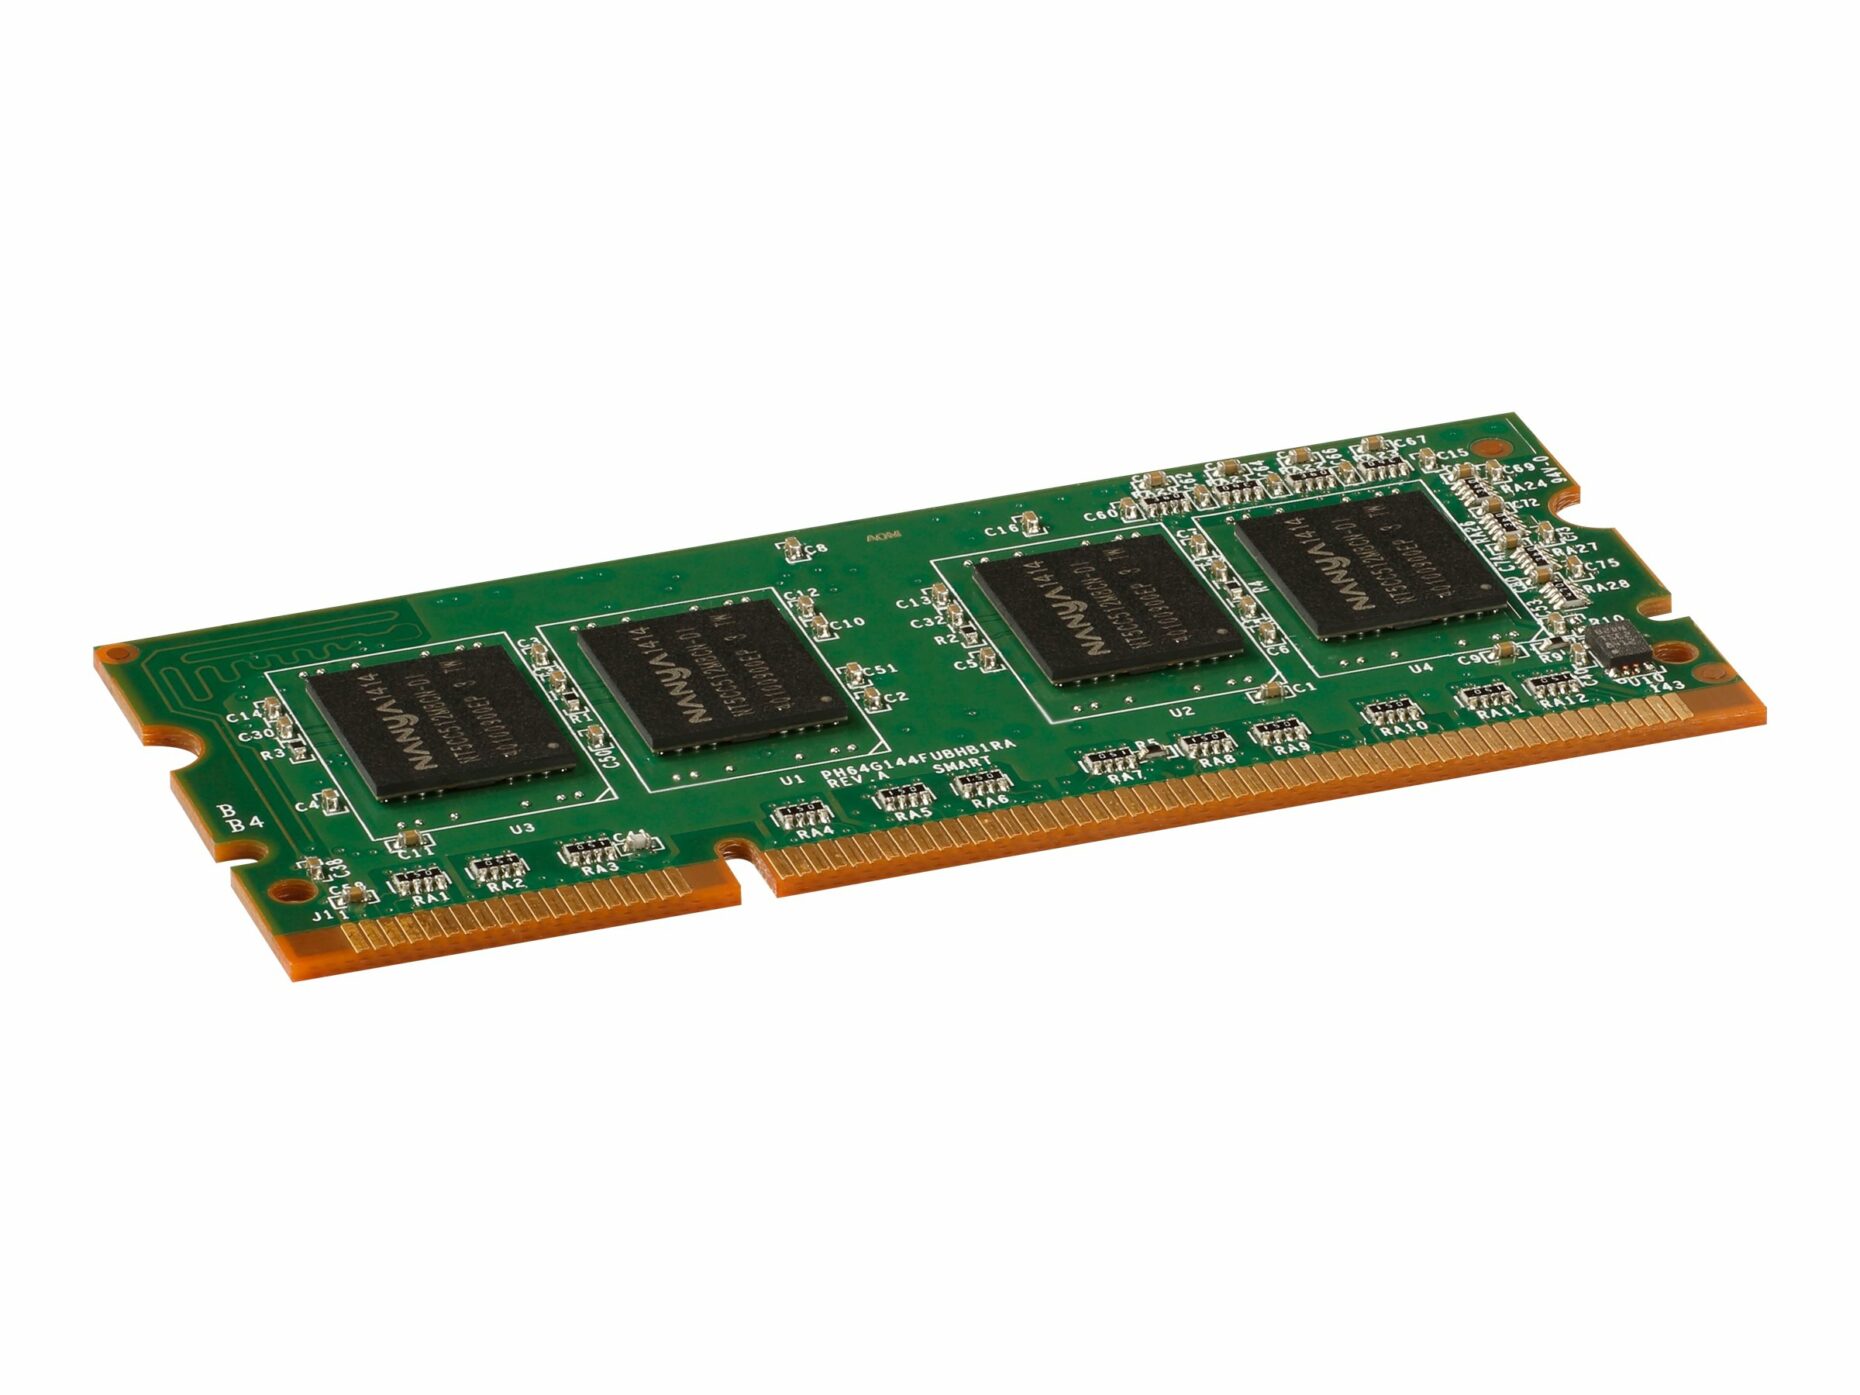 SODIMM 144 Pin. Ddr3-1600 ddr3 SDRAM 800 МГЦ. Ddr2 2gb 800mhz. Hynix ddr2 2gb 800mhz.